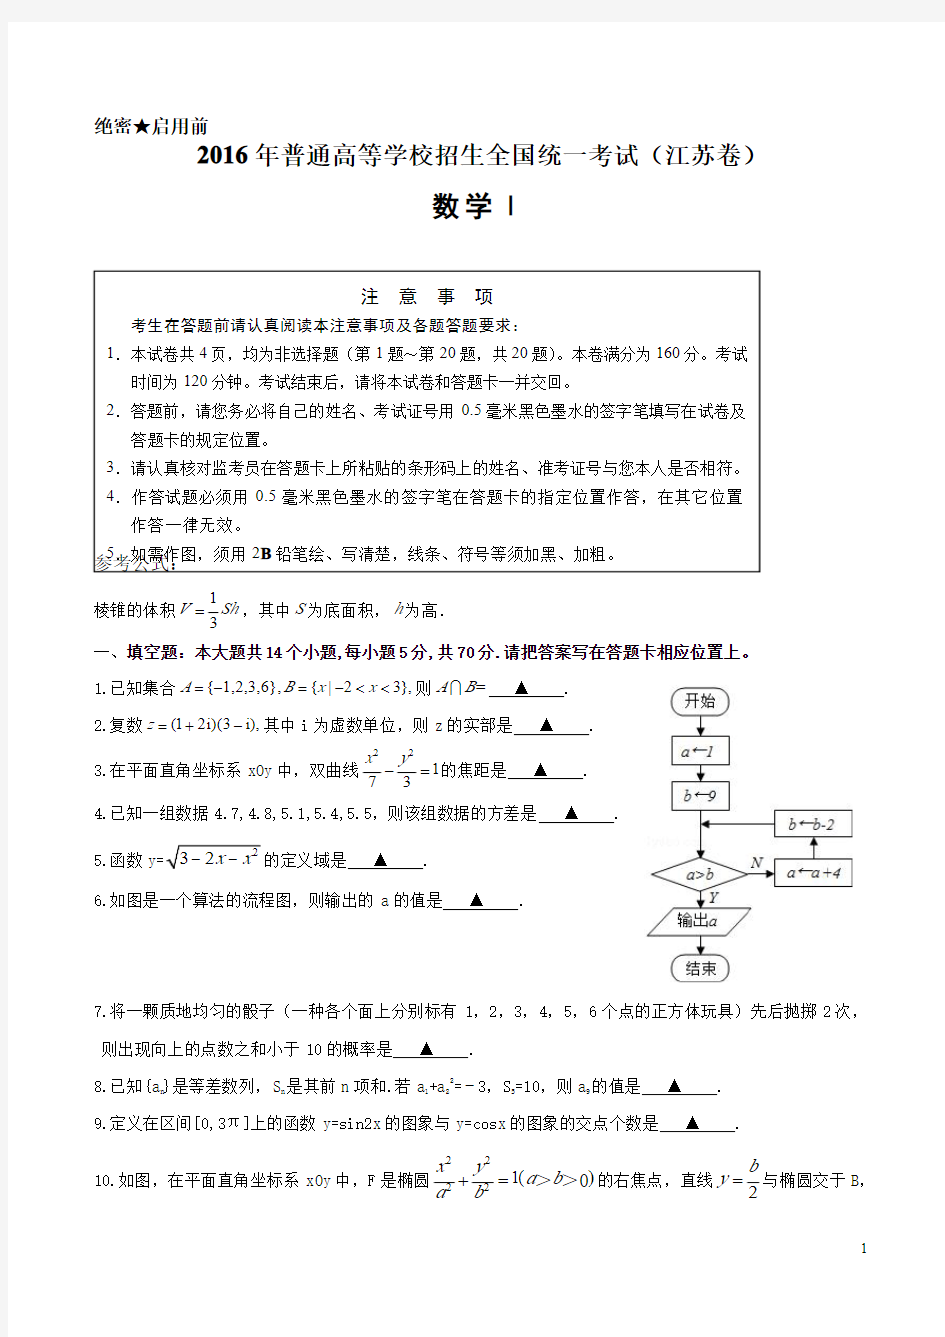 【真题】2016年江苏省高考数学试题(含附加题+答案)